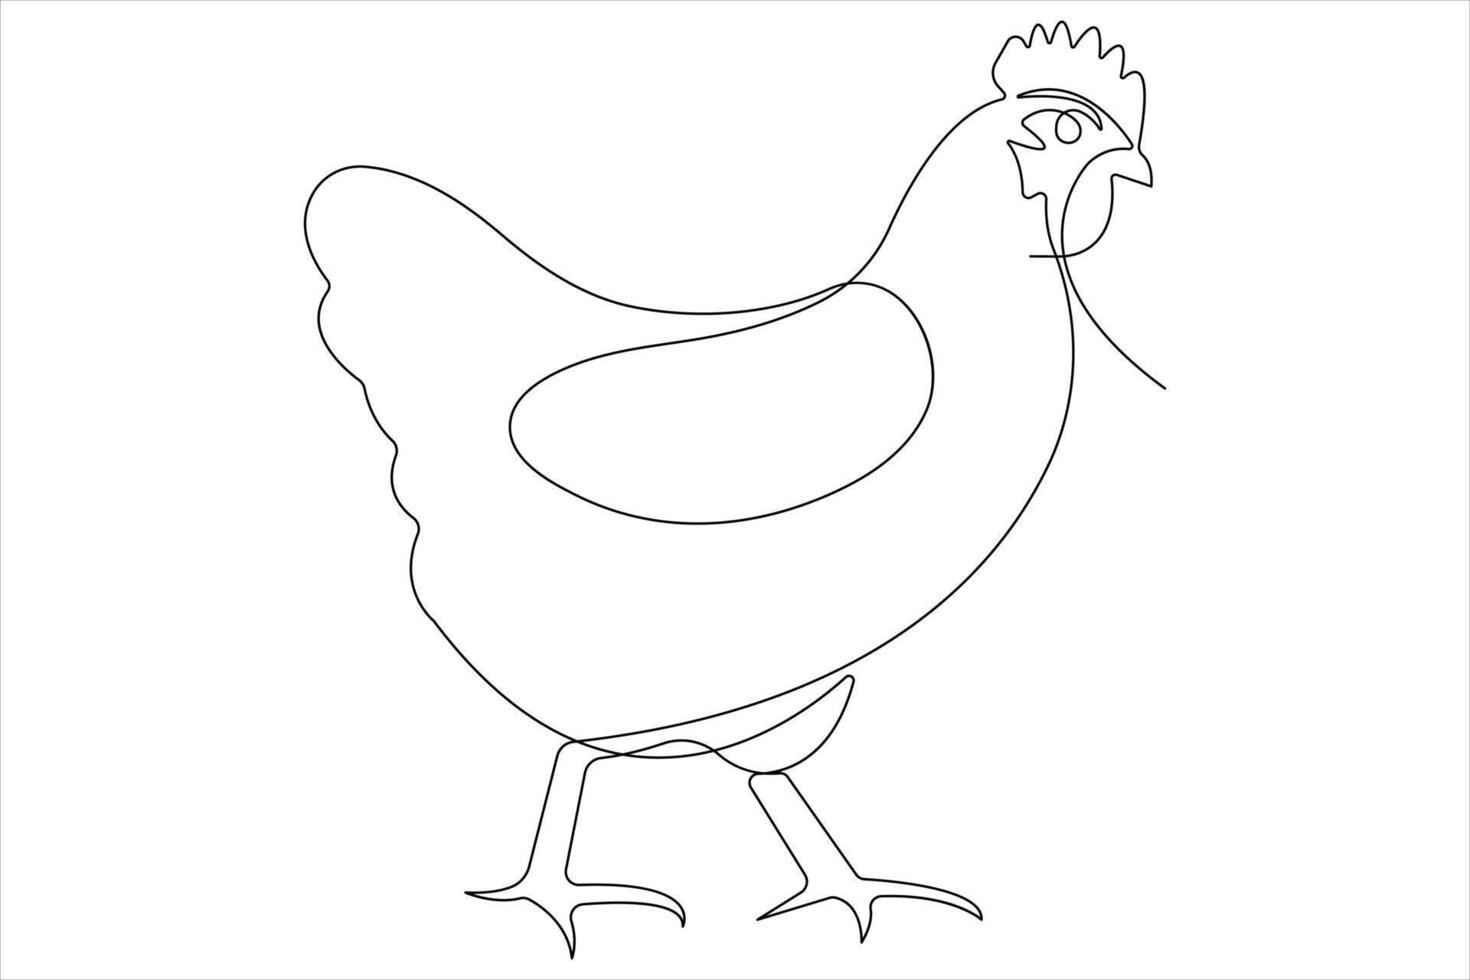 doorlopend een lijn kunst tekening van huisdier dier kip concept schets vector illustratie